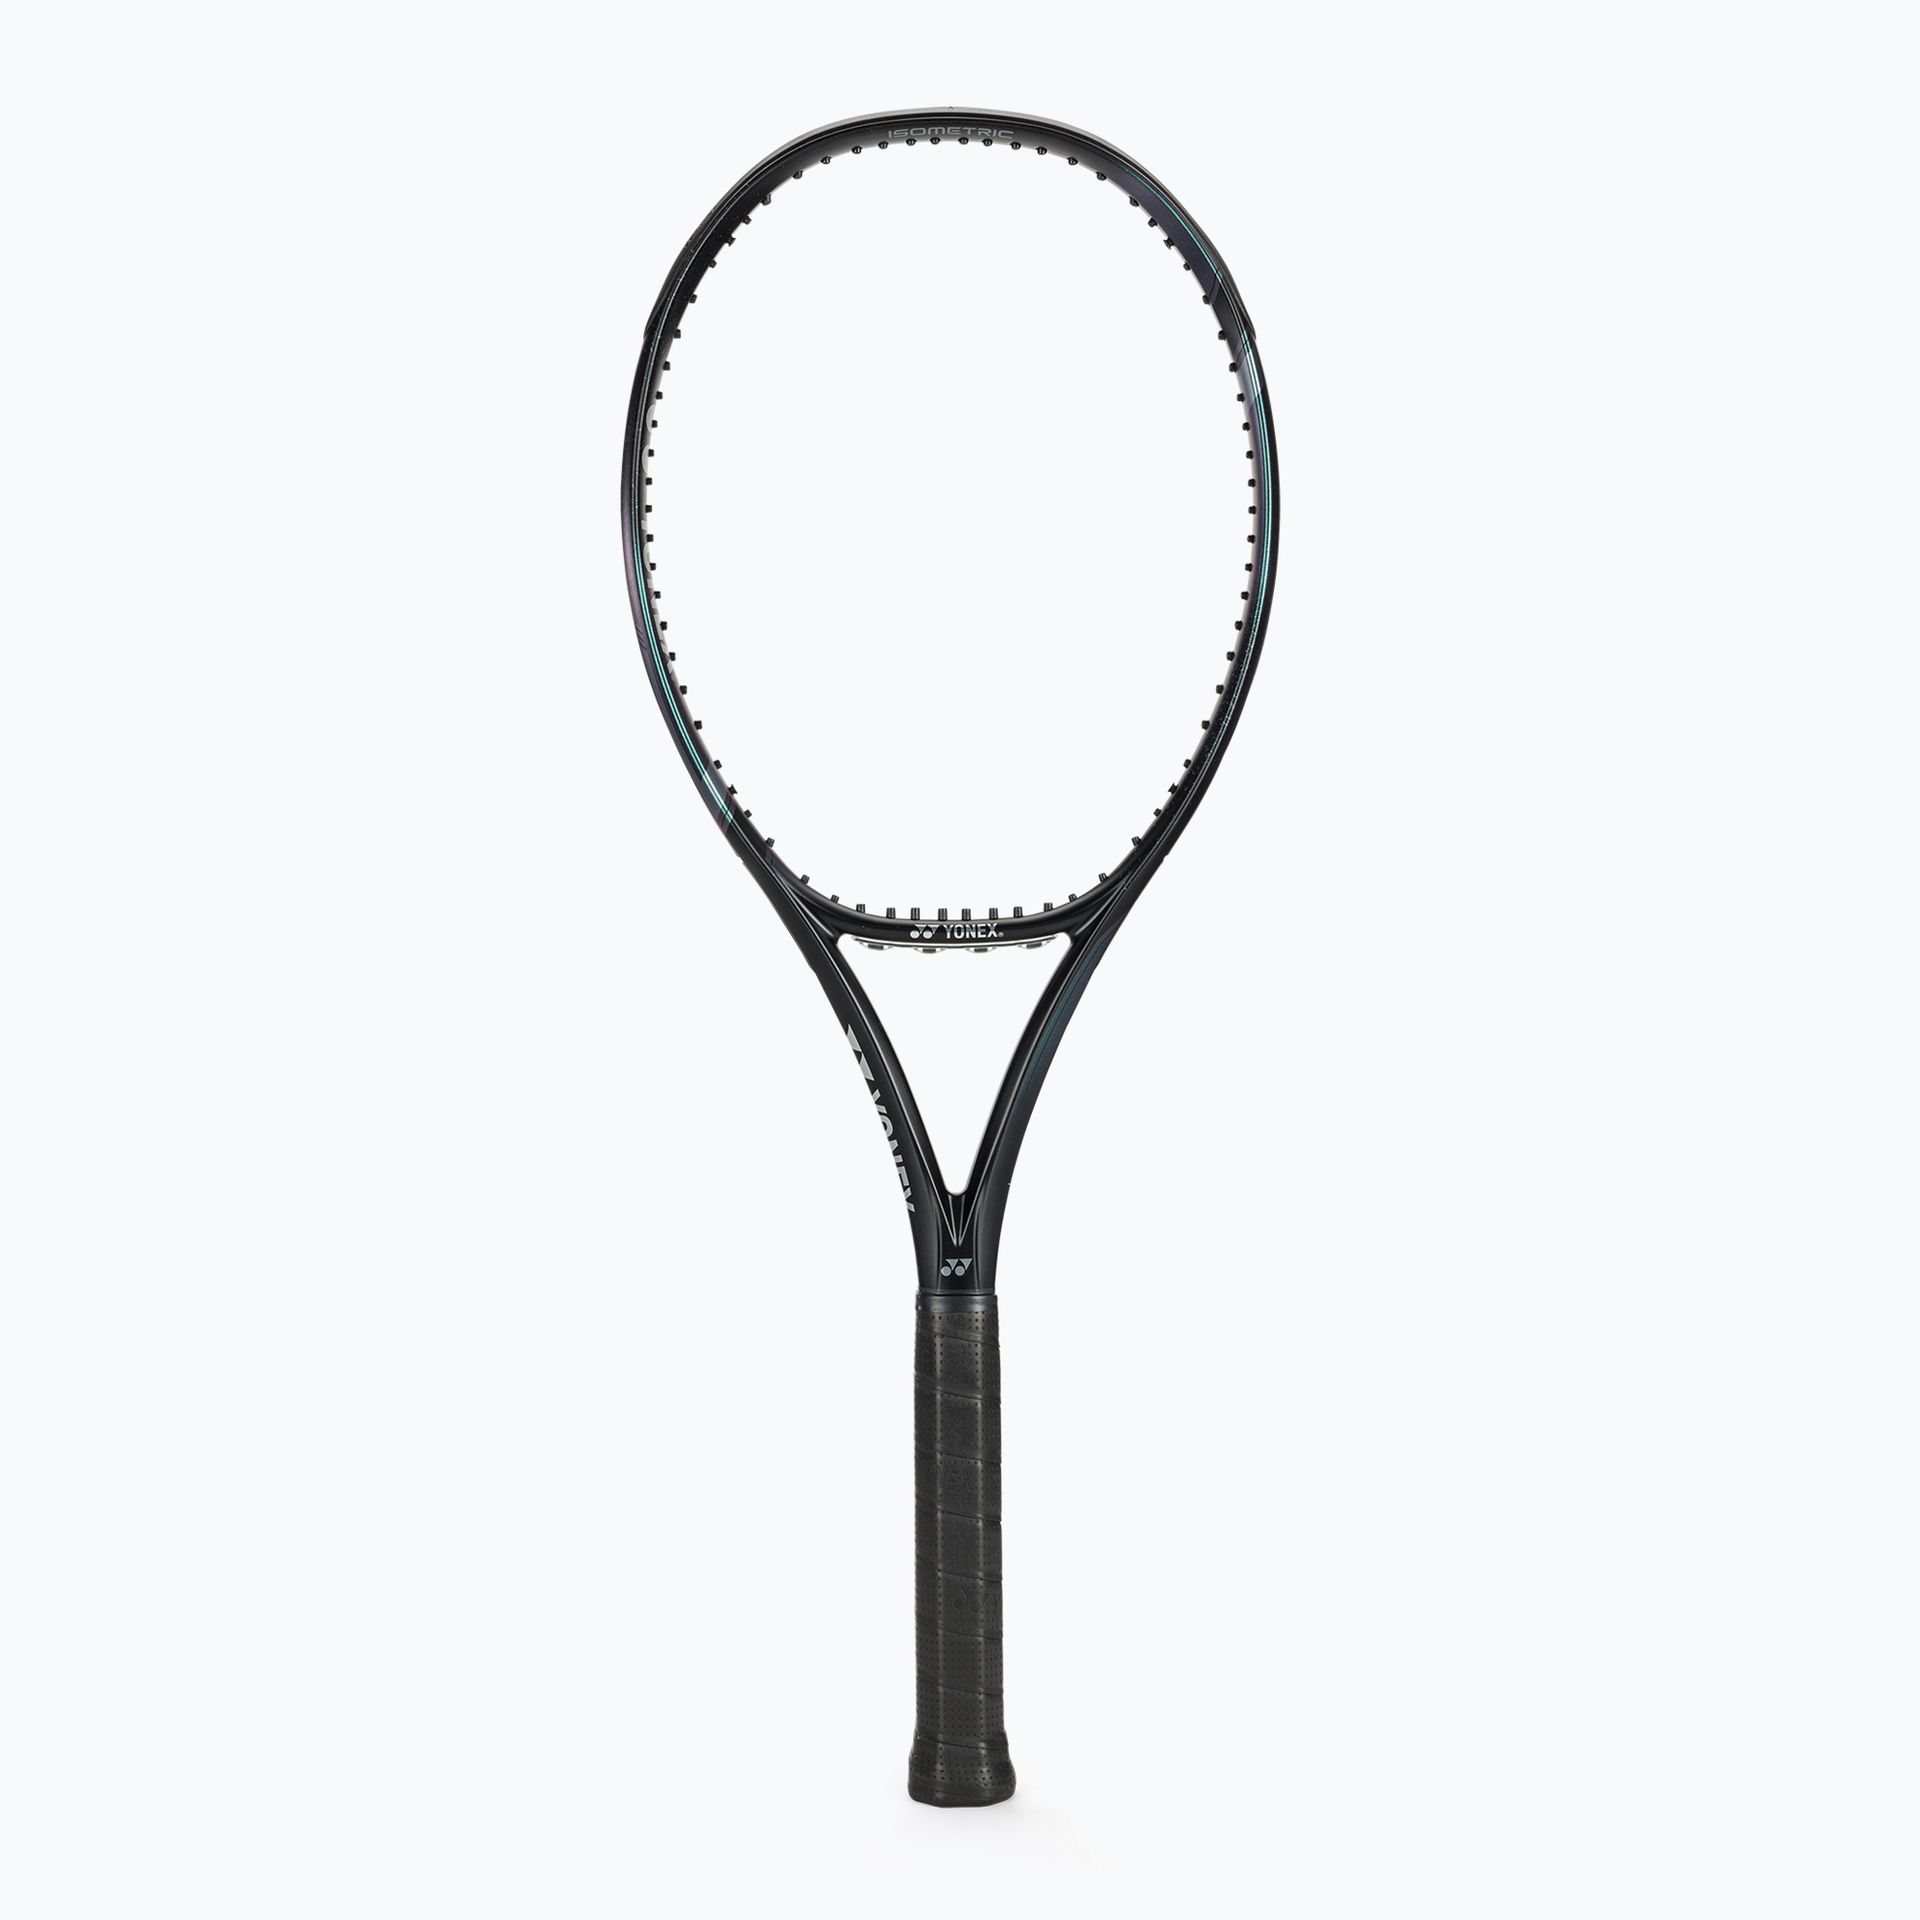 Rakieta tenisowa YONEX Ezone 98 aqua/black